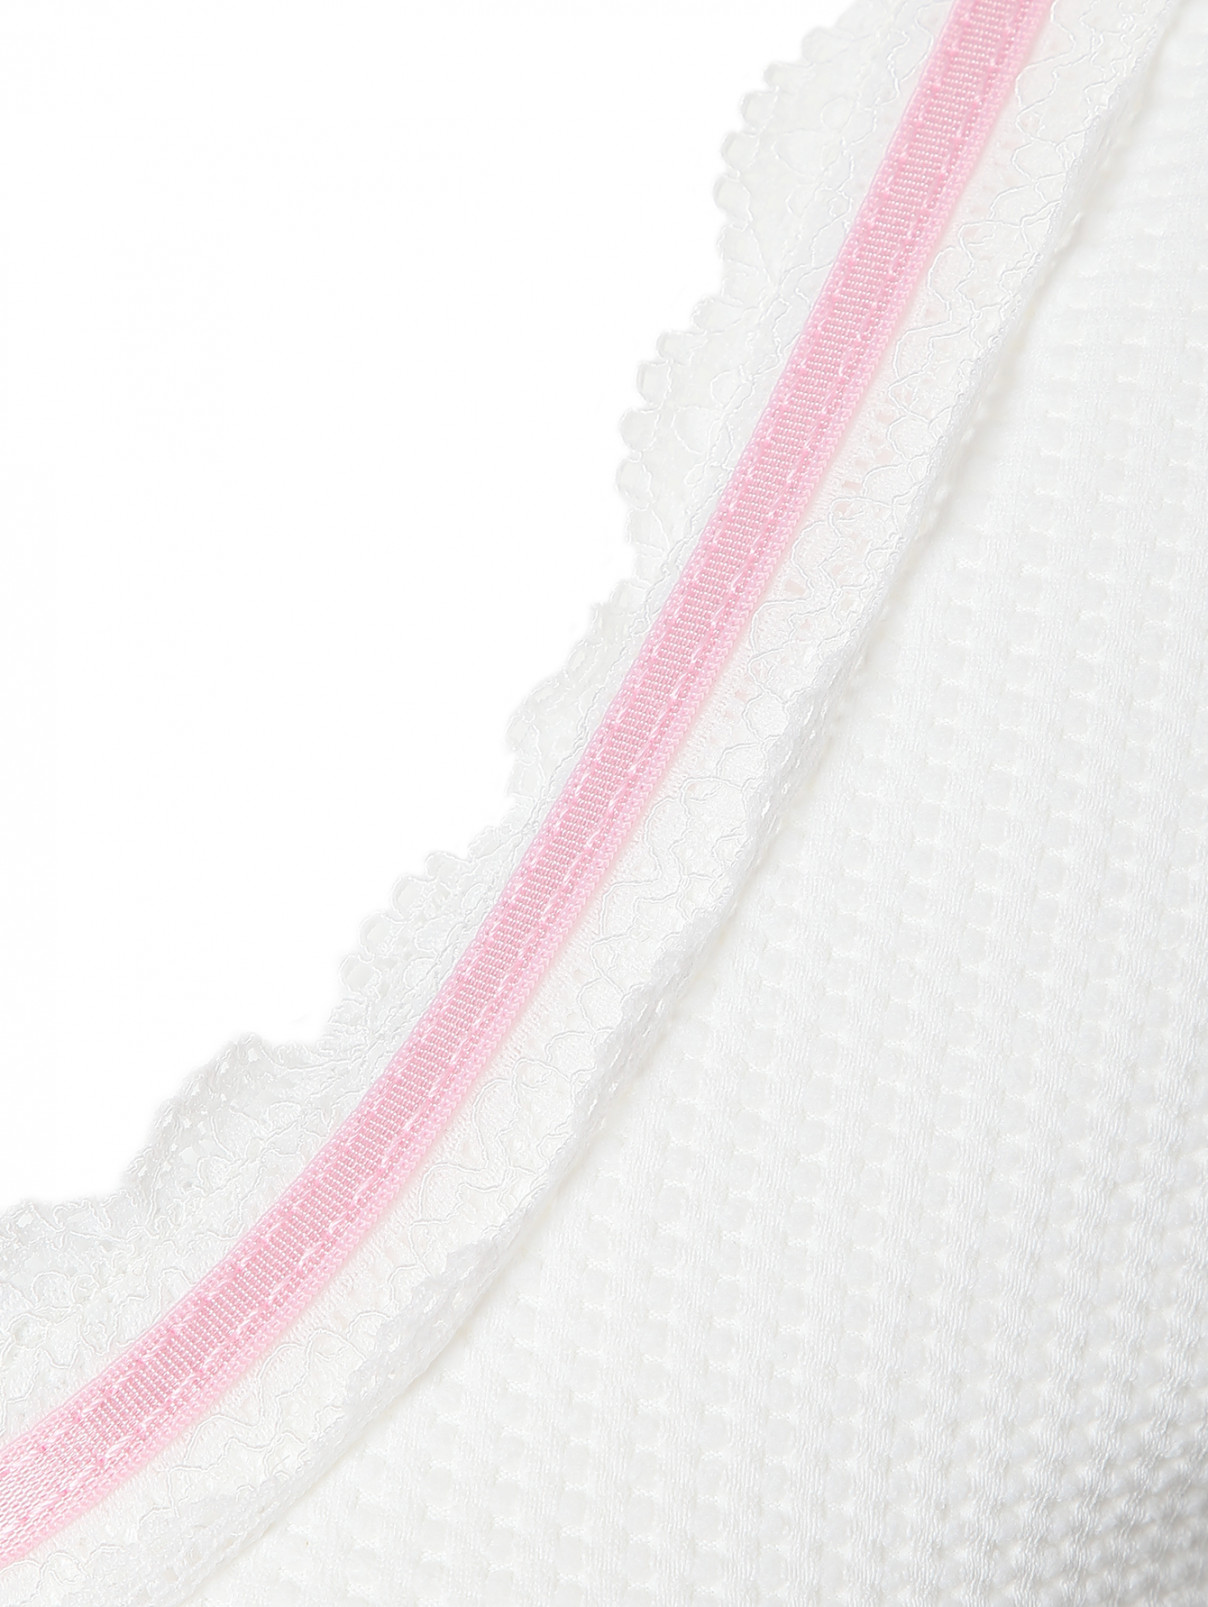 Укороченный топ с кружевной отделкой Frankies Bikinis  –  Деталь  – Цвет:  Белый